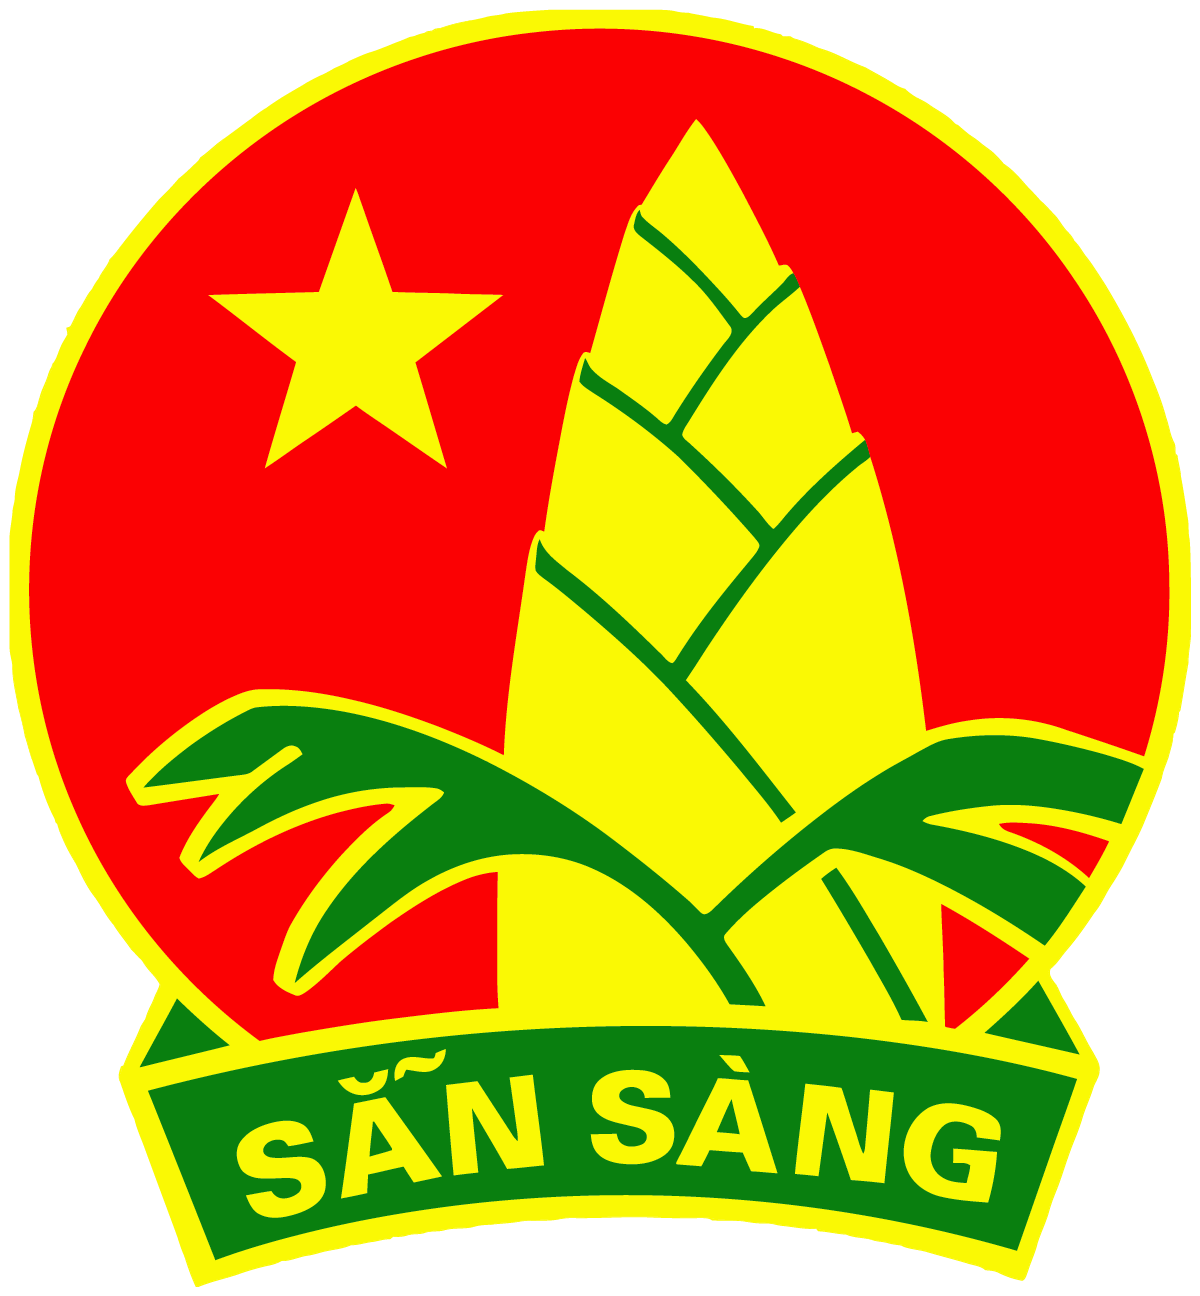 Hình ảnh về logo huy hiệu Đội Thiếu niên Tiền phong Hồ Chí Minh